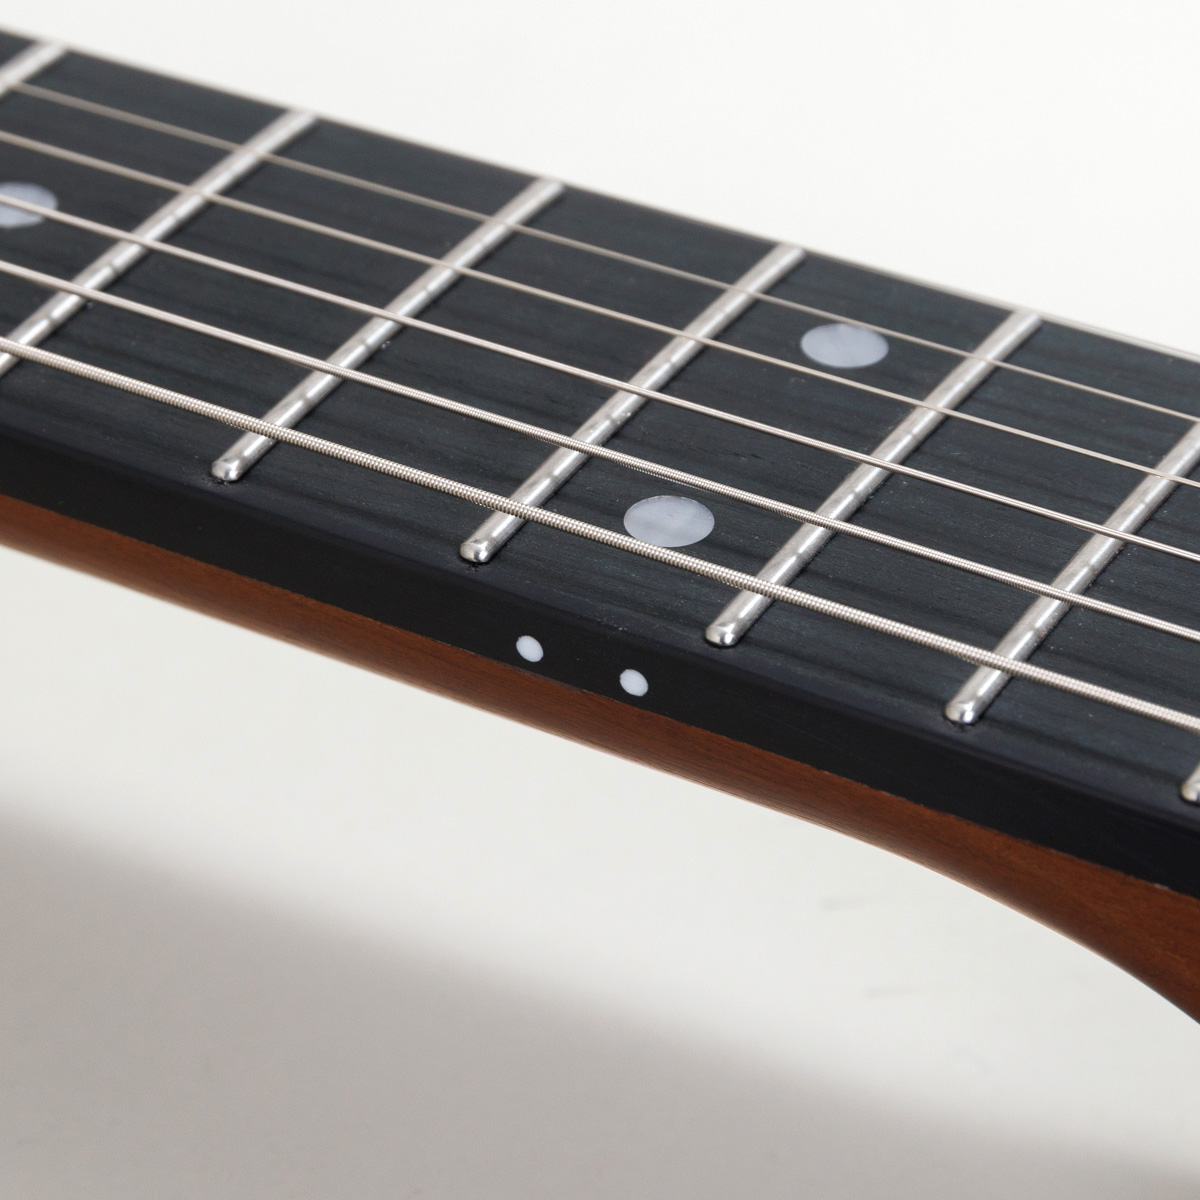 BST-Standard エレキギター初心者12点セット【ミニアンプ付き】ストラトキャスタータイプ ローステッドメイプルネック パステルカラー 関連画像